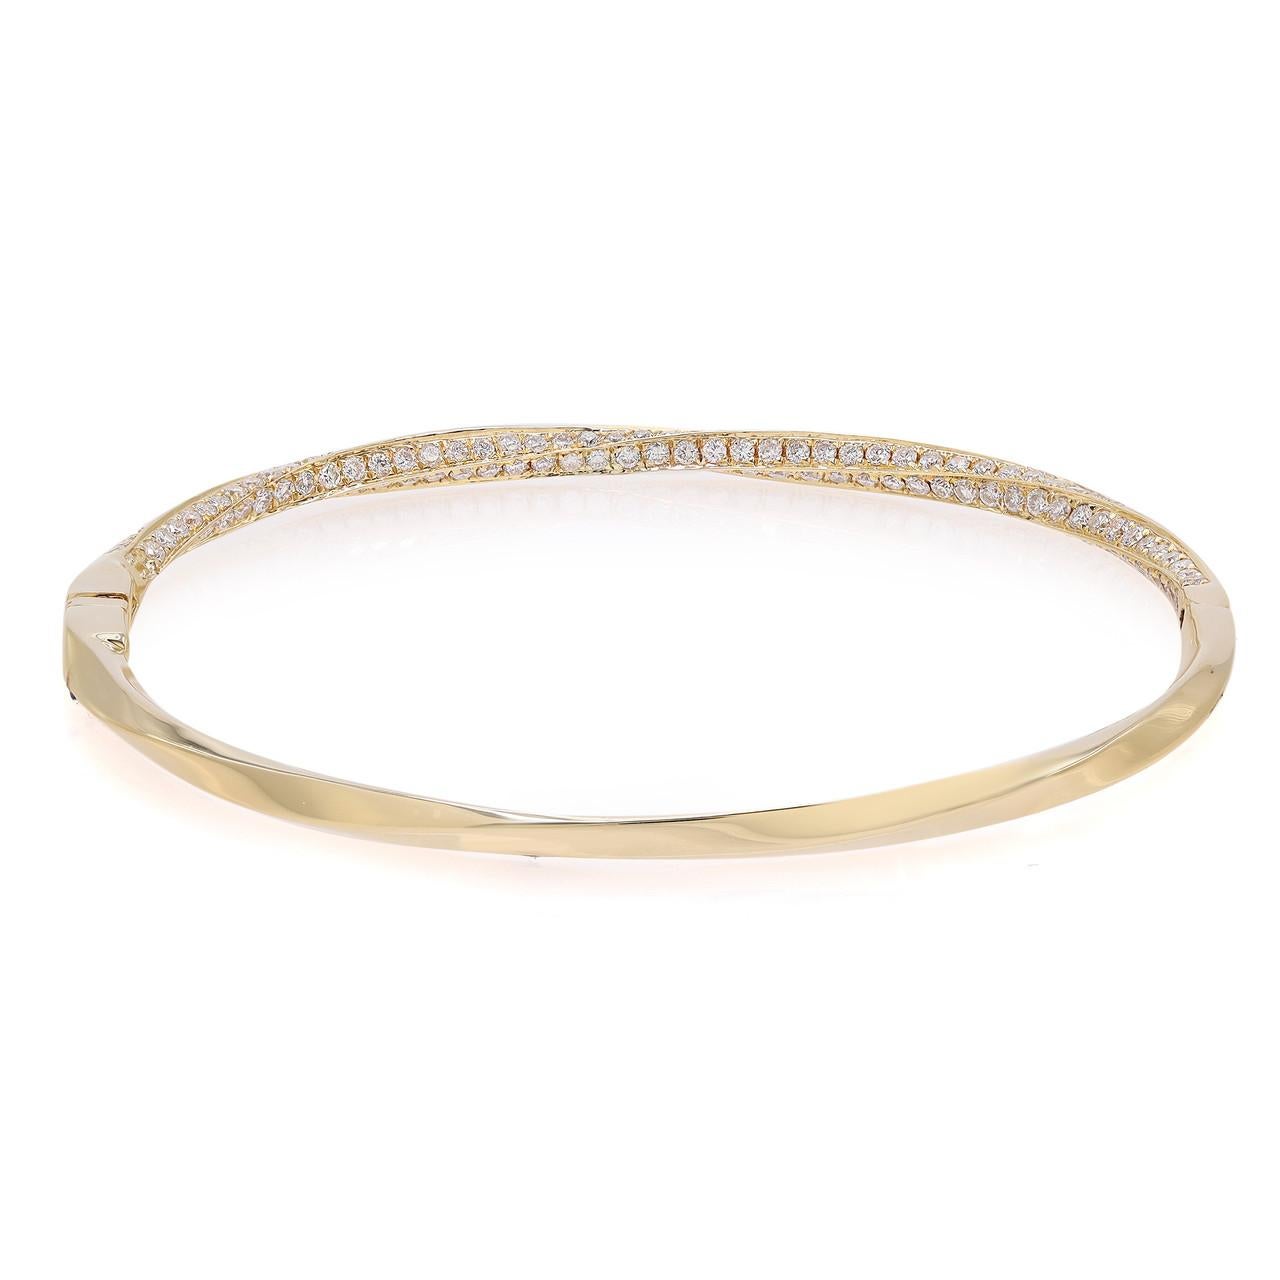 Wir stellen Ihnen unser exquisites 2.07 Karat Rundschliff-Diamant-Armband in Gelbgold vor. Dieses bezaubernde Schmuckstück verbindet die Eleganz eines Twist-Designs mit dem Glanz gepflasterter Diamanten und ist ein wahrhaft atemberaubendes